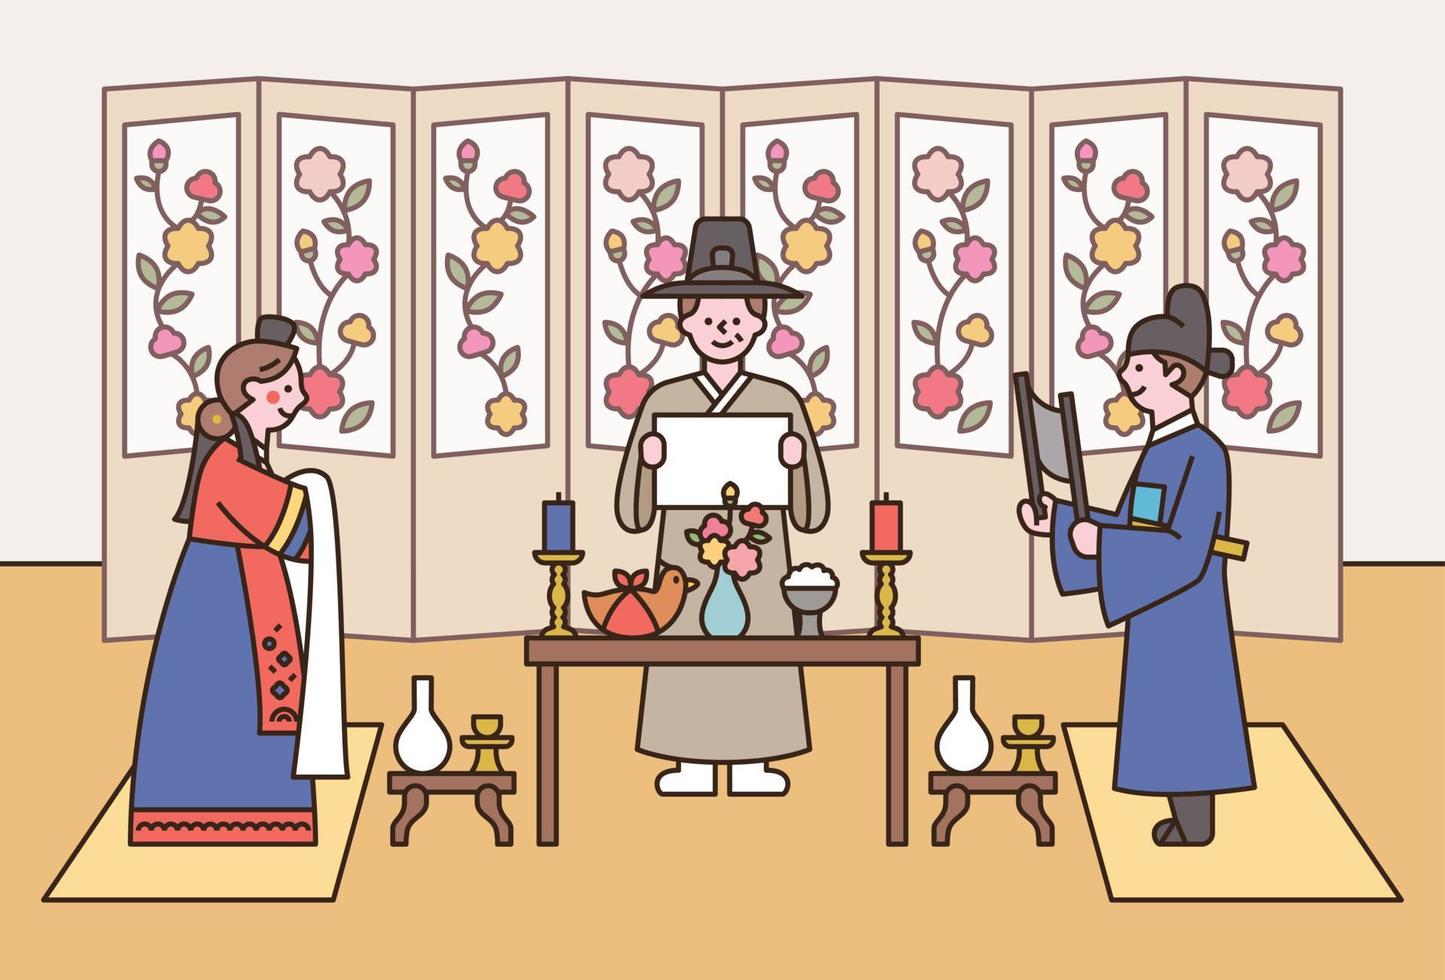 traditionellt koreanskt bröllop. brudgummen och bruden står inför varandra med ett bord emellan. den person som förrättar är värd för bröllopet. vektor